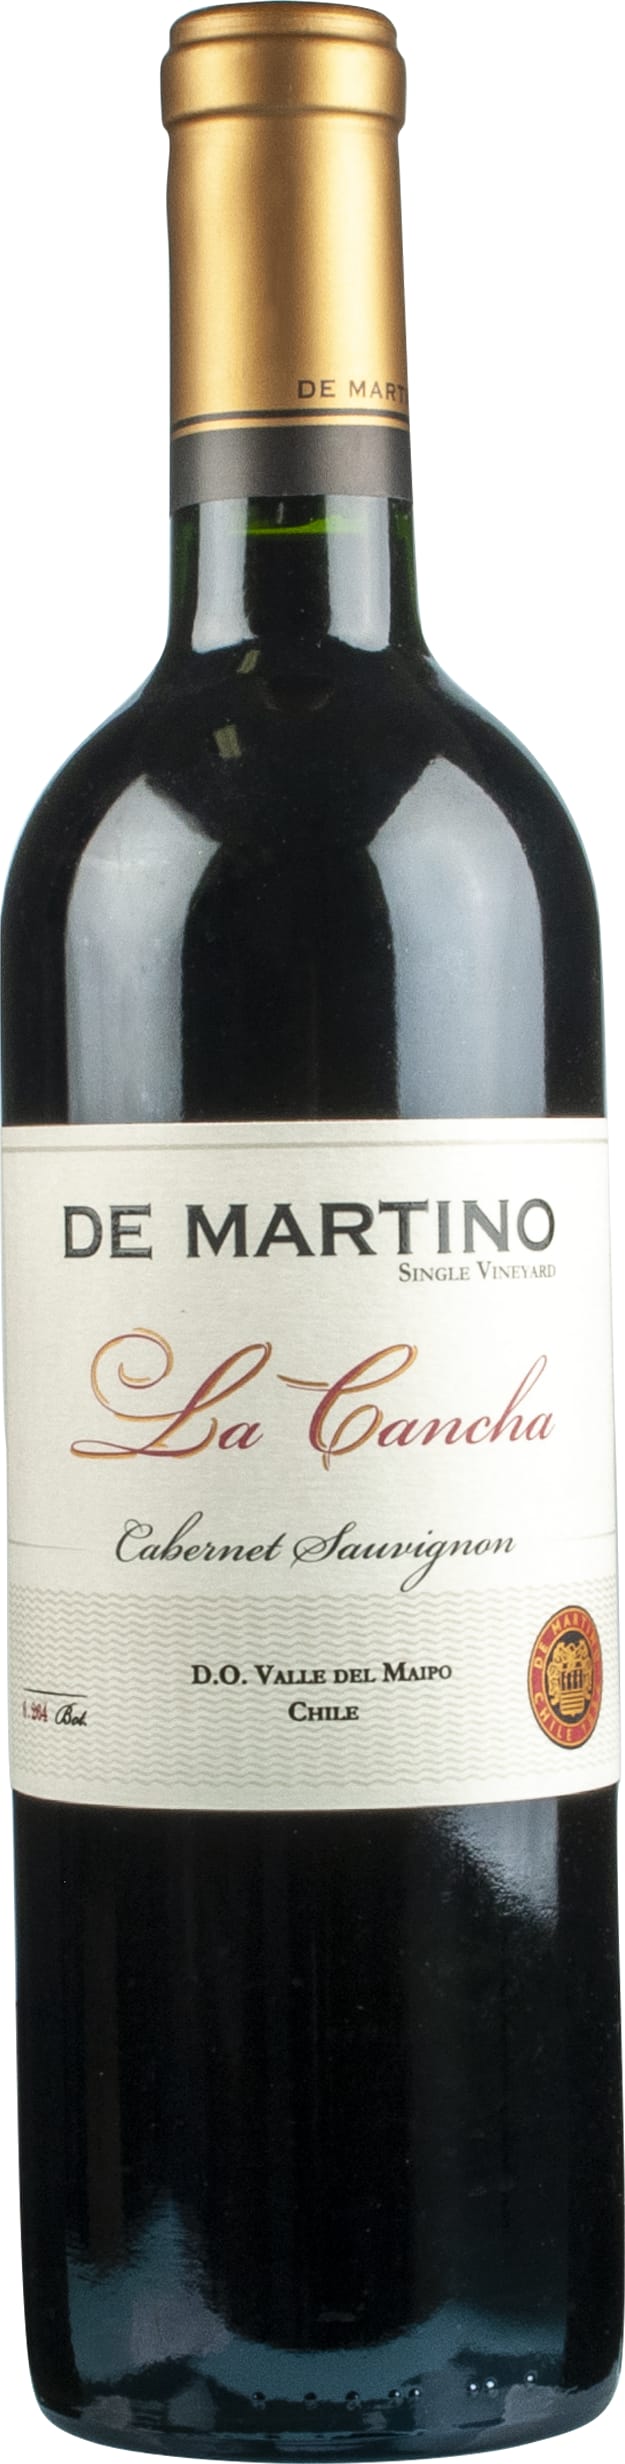 De Martino Cabernet Sauvignon 'La Cancha' 2020 75cl - Buy De Martino Wines from GREAT WINES DIRECT wine shop